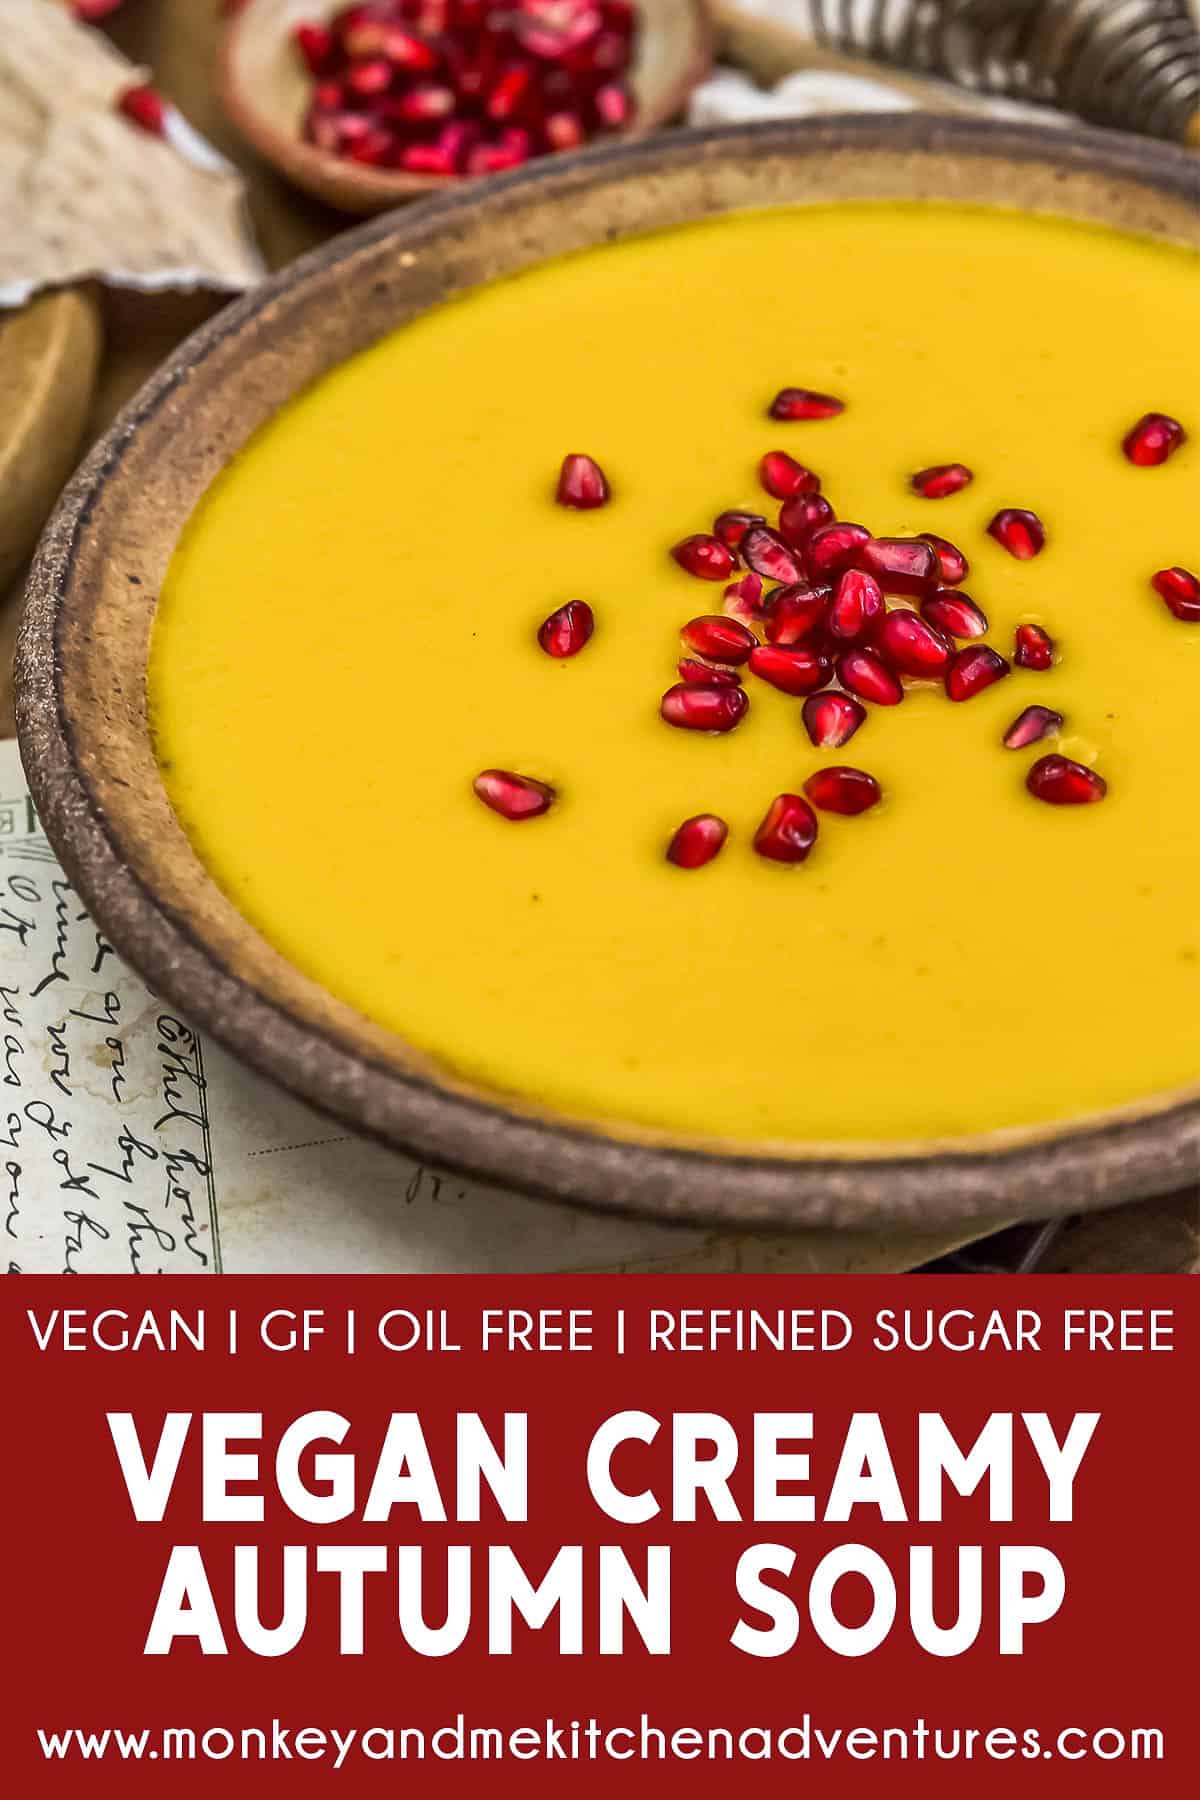 Vegan Creamy Autumn Soup with text description